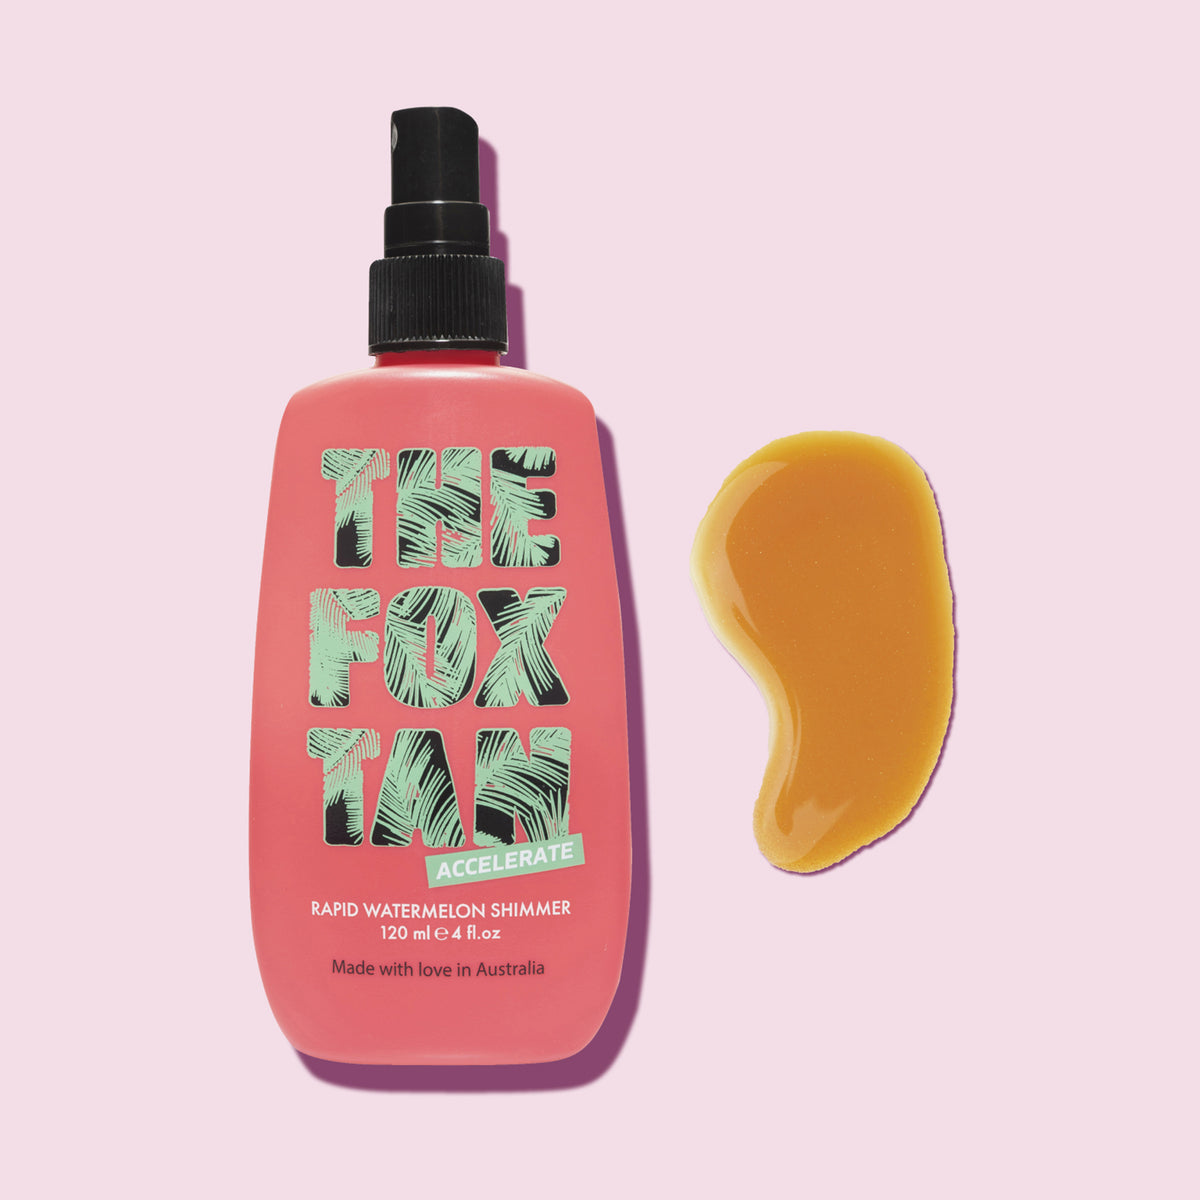 Eine Flasche The Fox Tan Rapid Watermelon Shimmer, daneben ein Klecks des Produkts. Rosa Grund. 